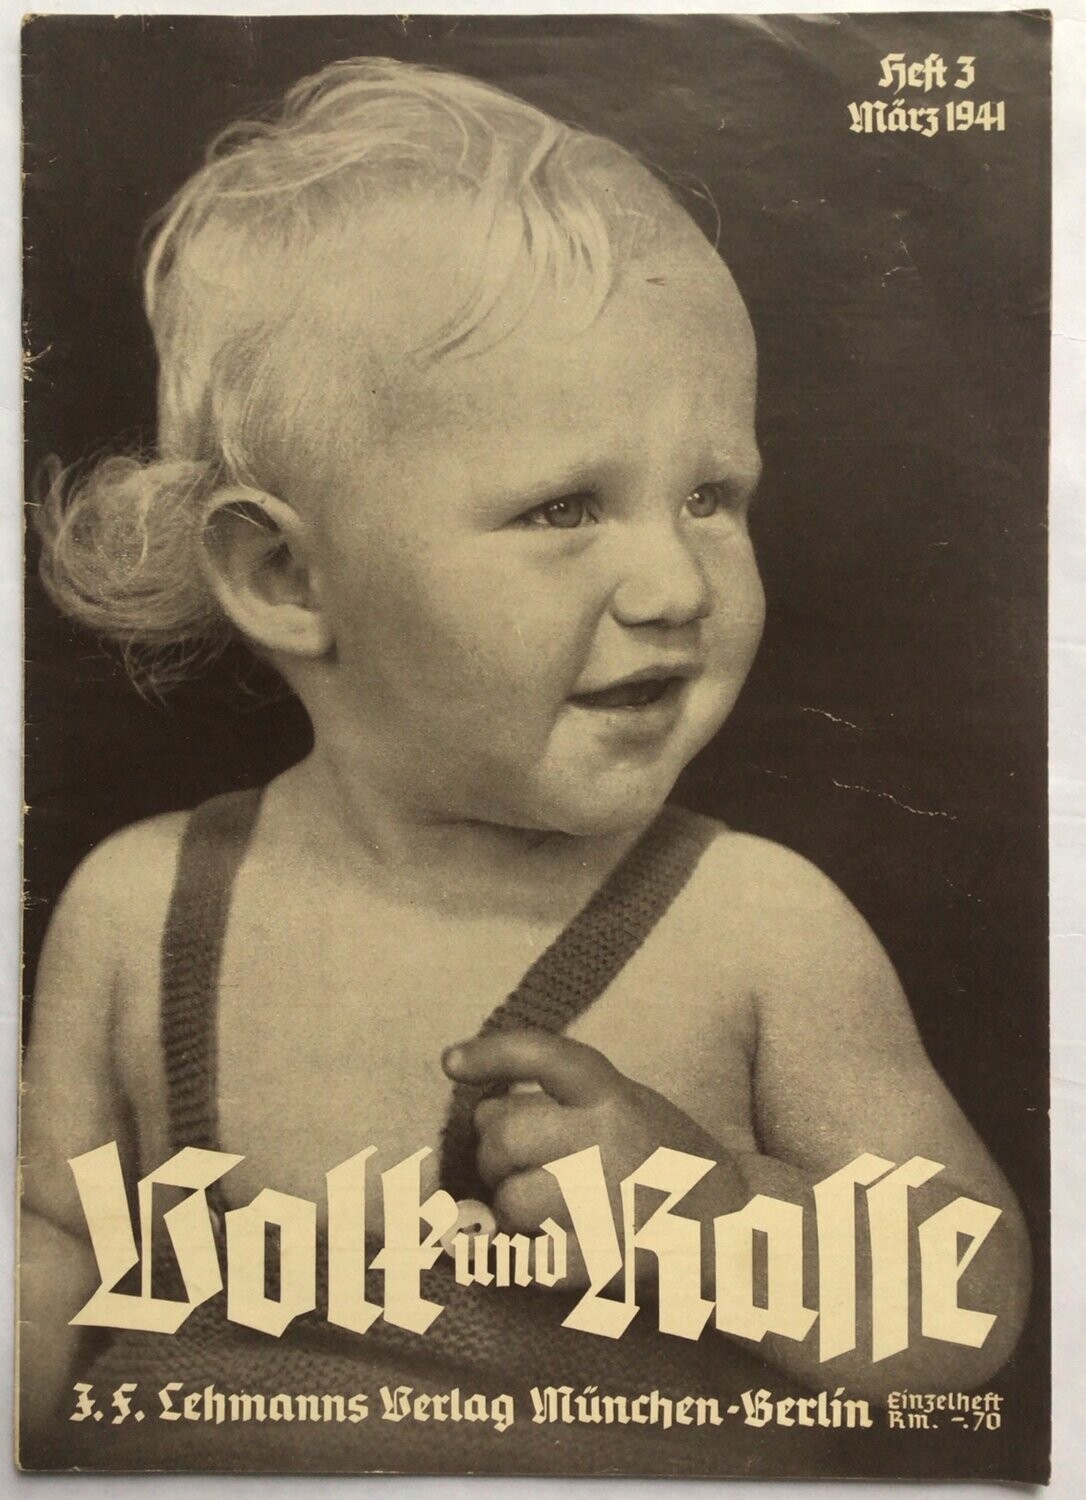 Volk und Rasse - Illustrierte Monatsschrift für deutsches Volkstum - Rassenkunde - Rassenpflege: 16. Jahrgang Heft 3 März 1941